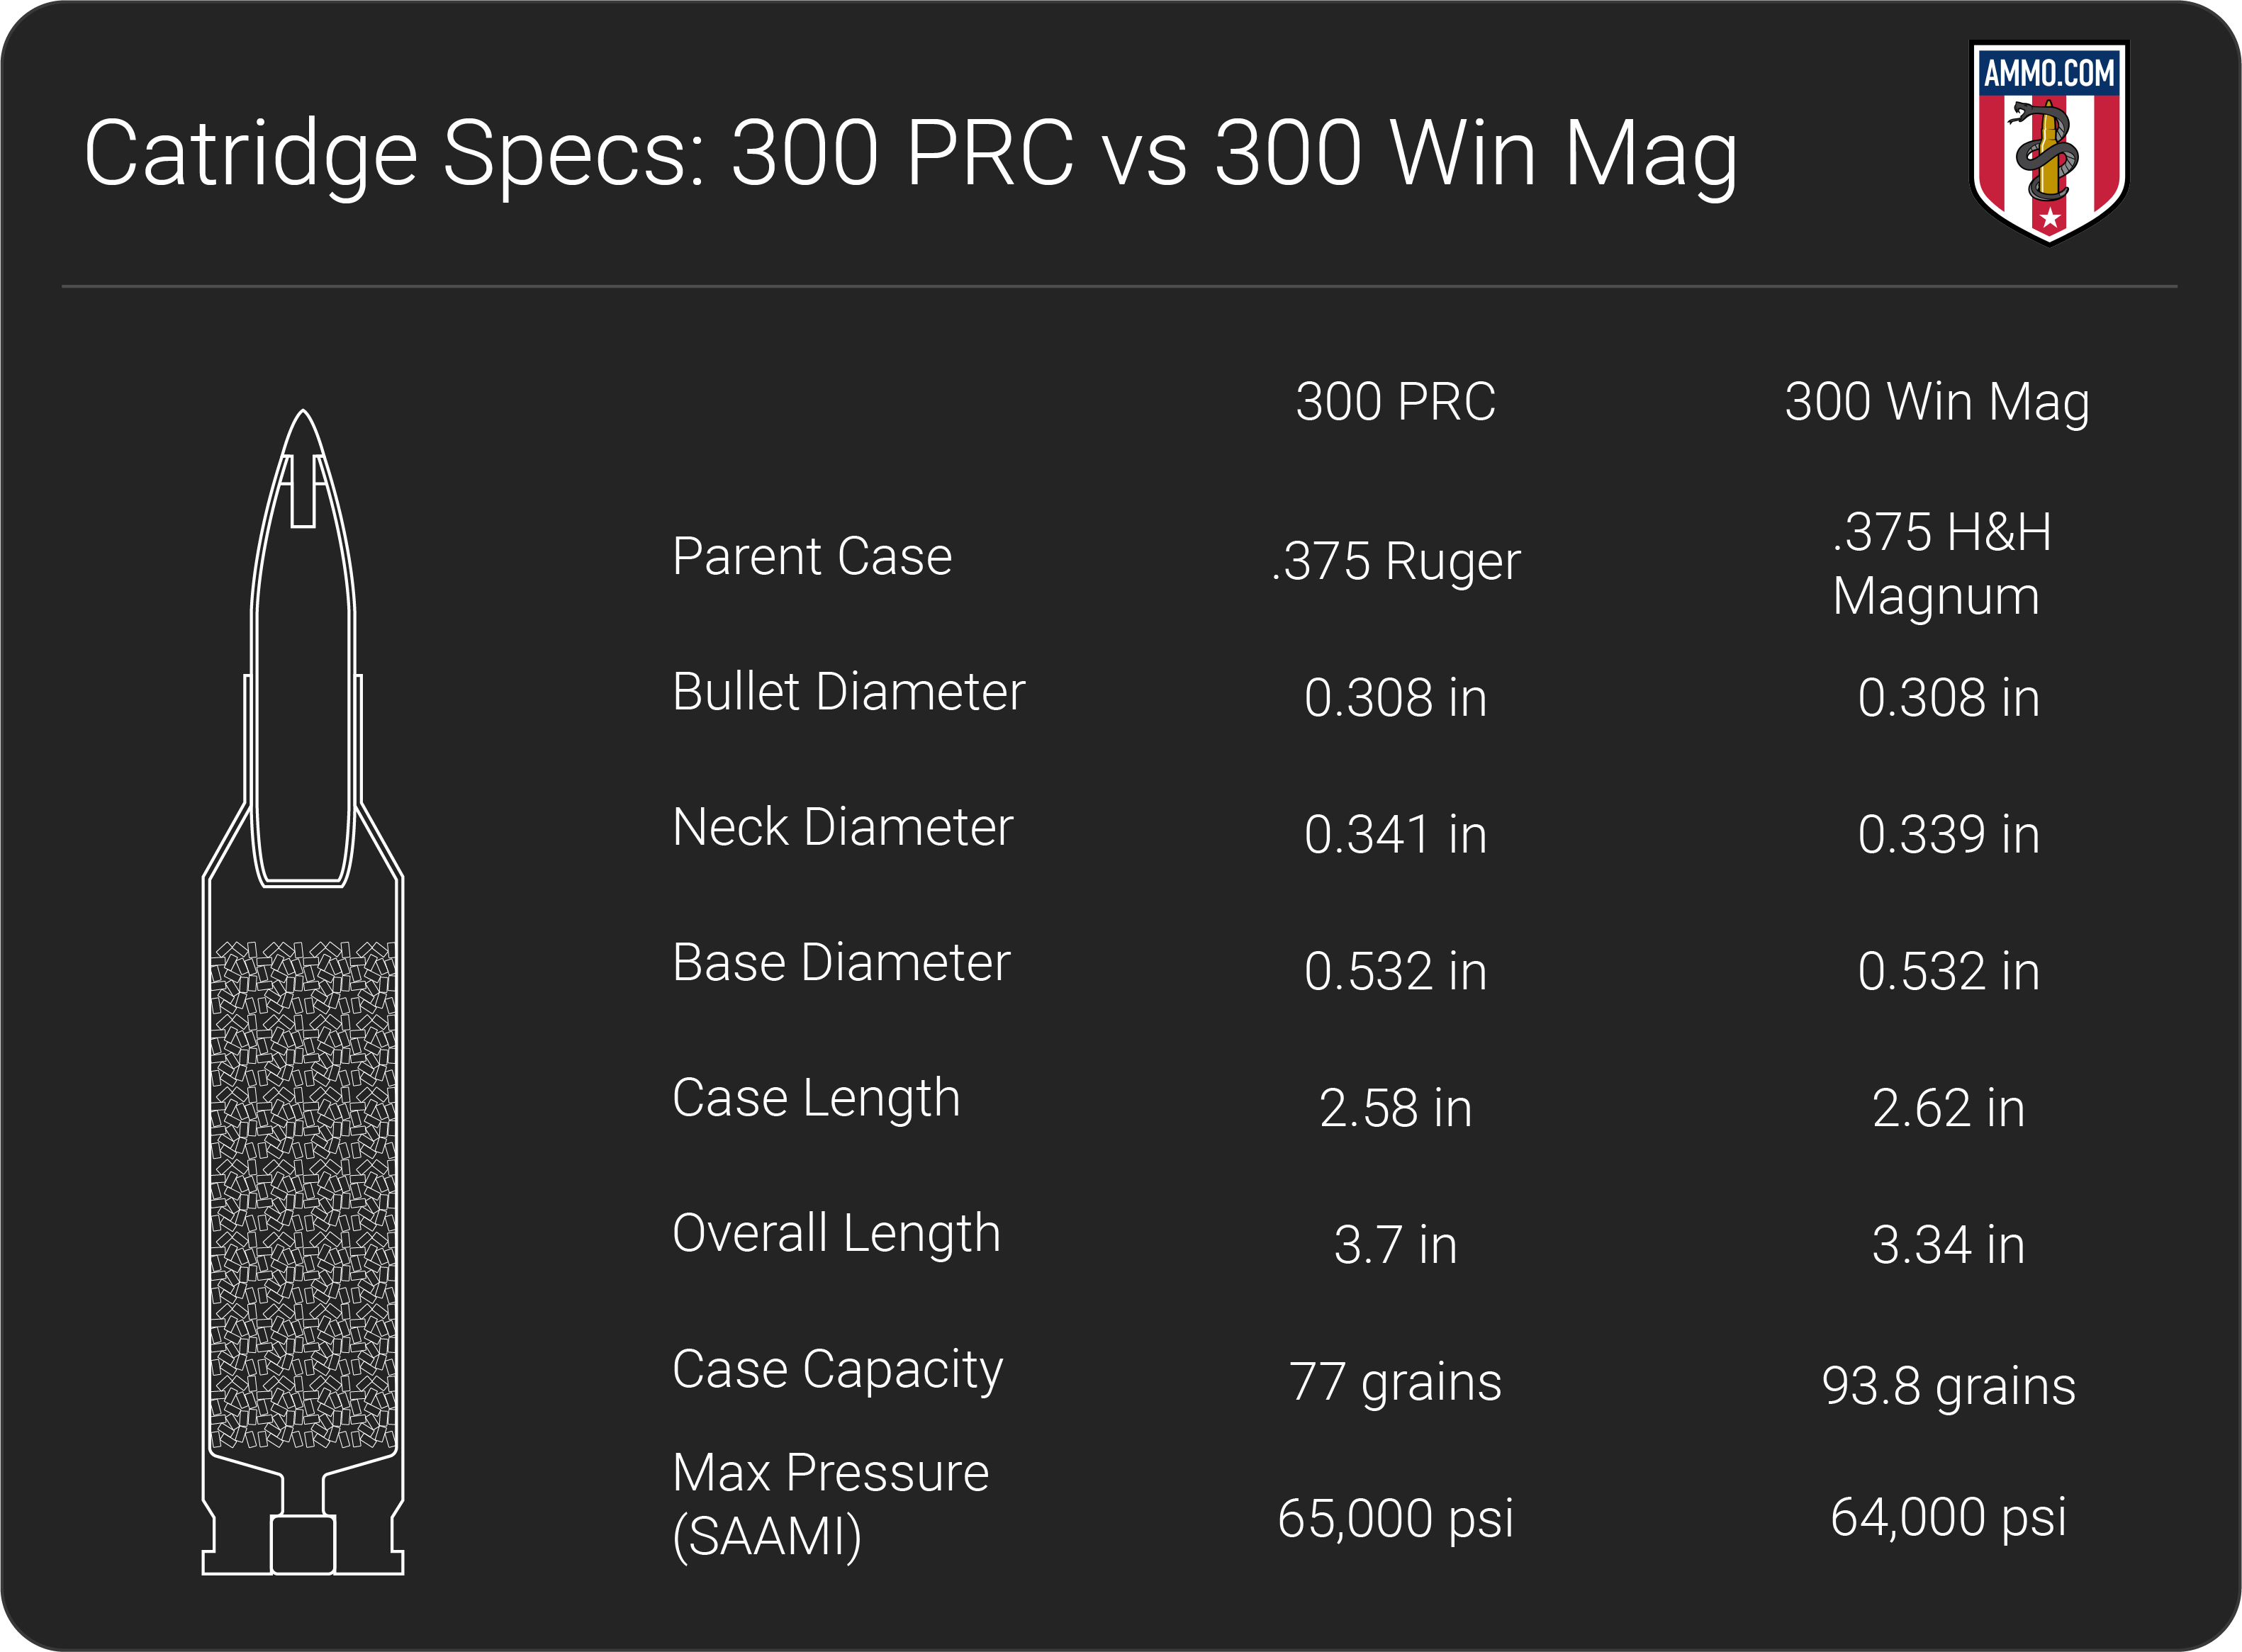 300 PRC vs 300 Win Mag dimension chart